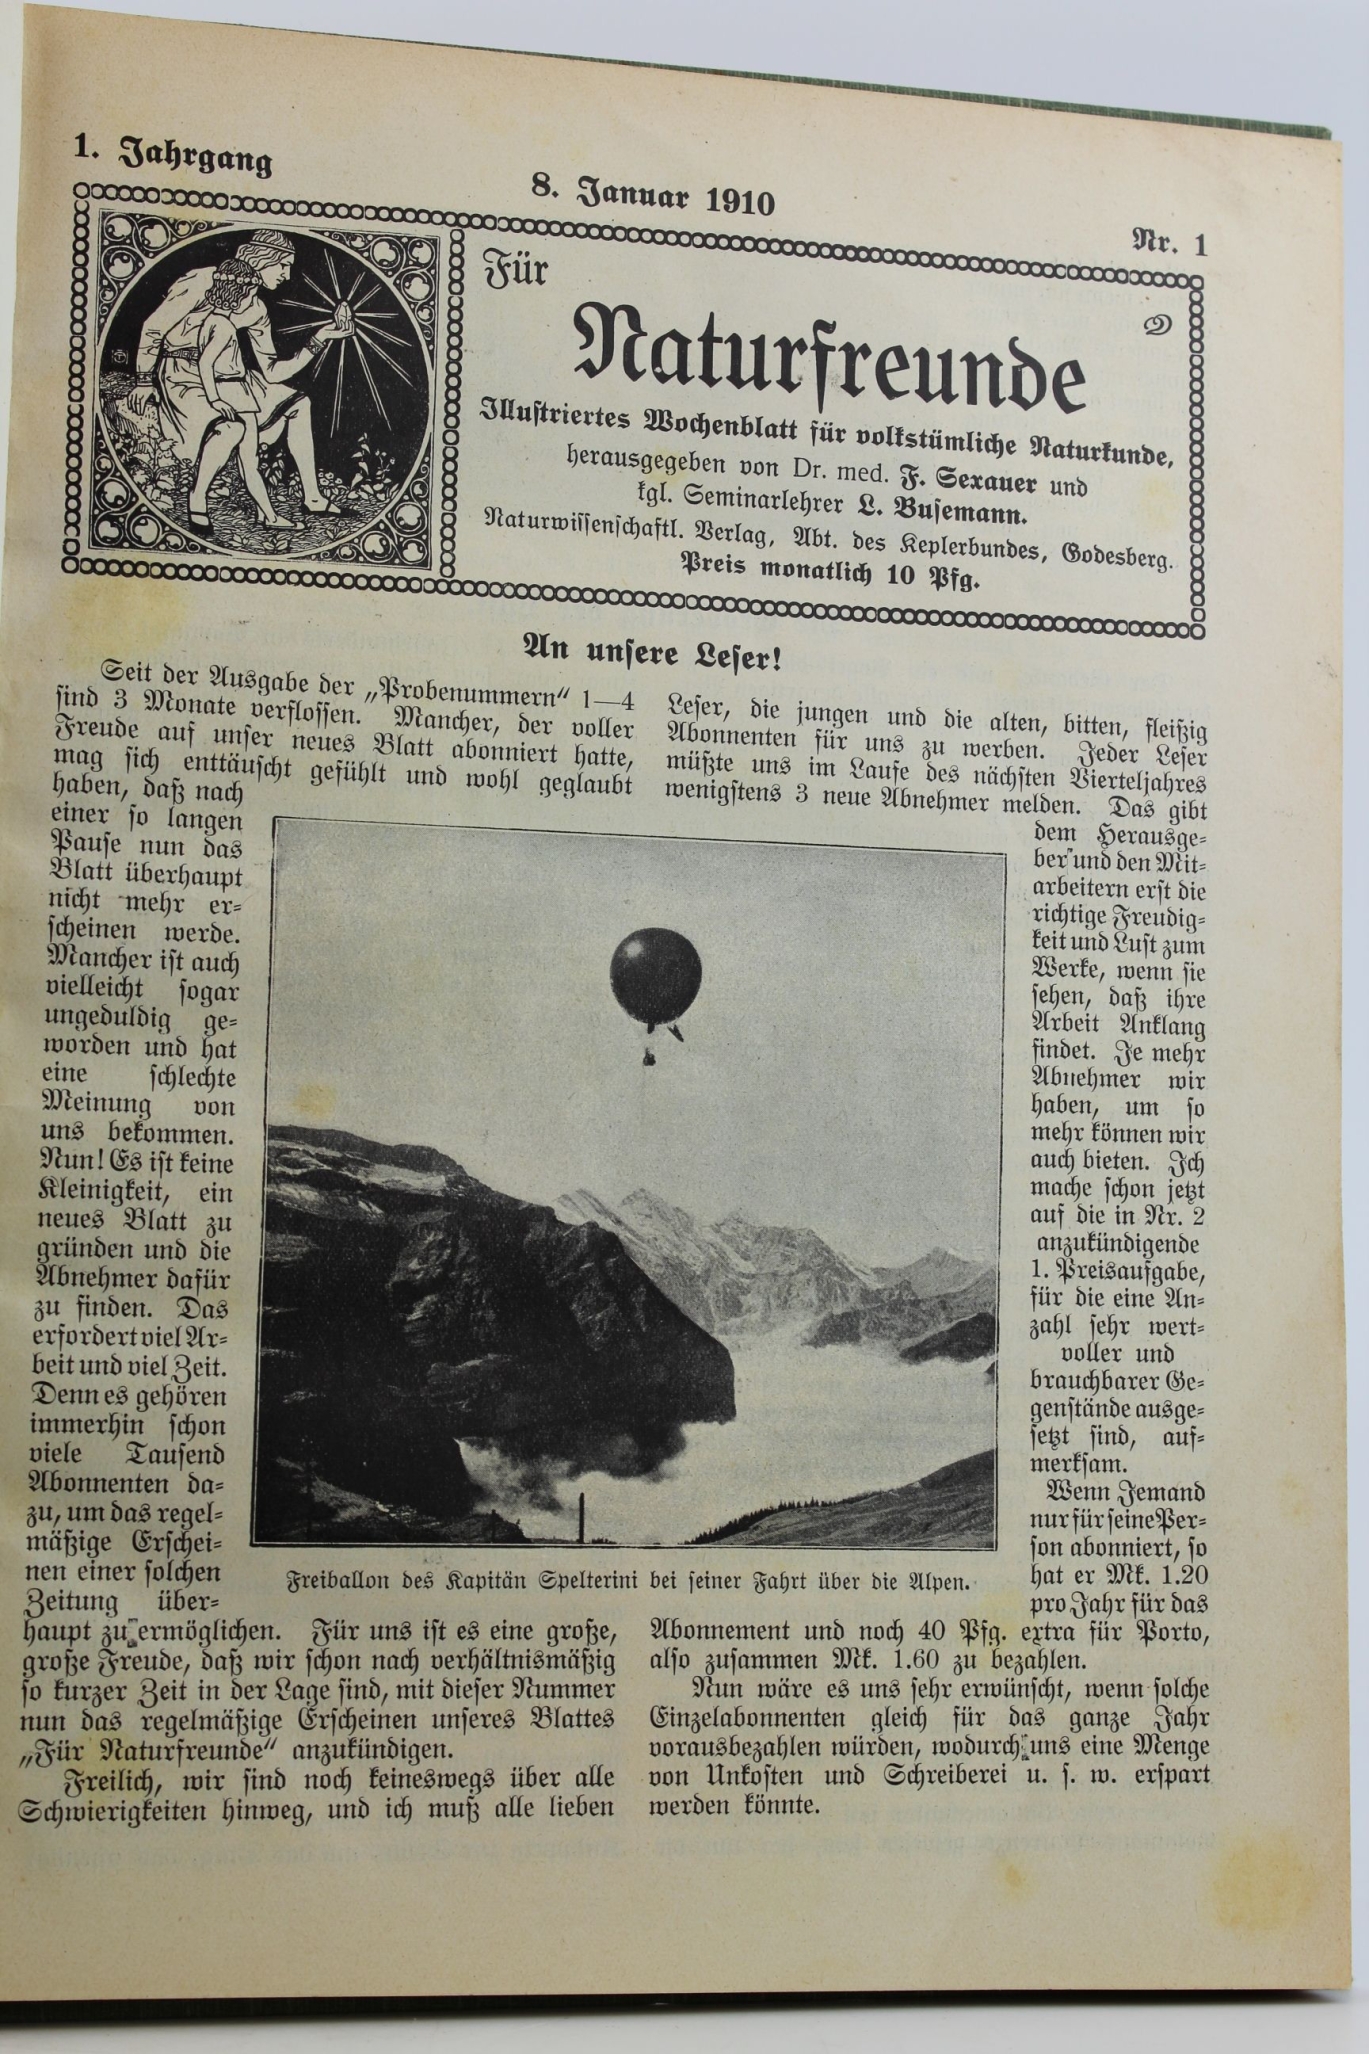 Sexauer / Busemann (Hrsg.), F. / L.: Für Naturfreunde. Illustriertes Wochenblatt für volkstümliche Naturkunde. Erster Jahrgang 1910